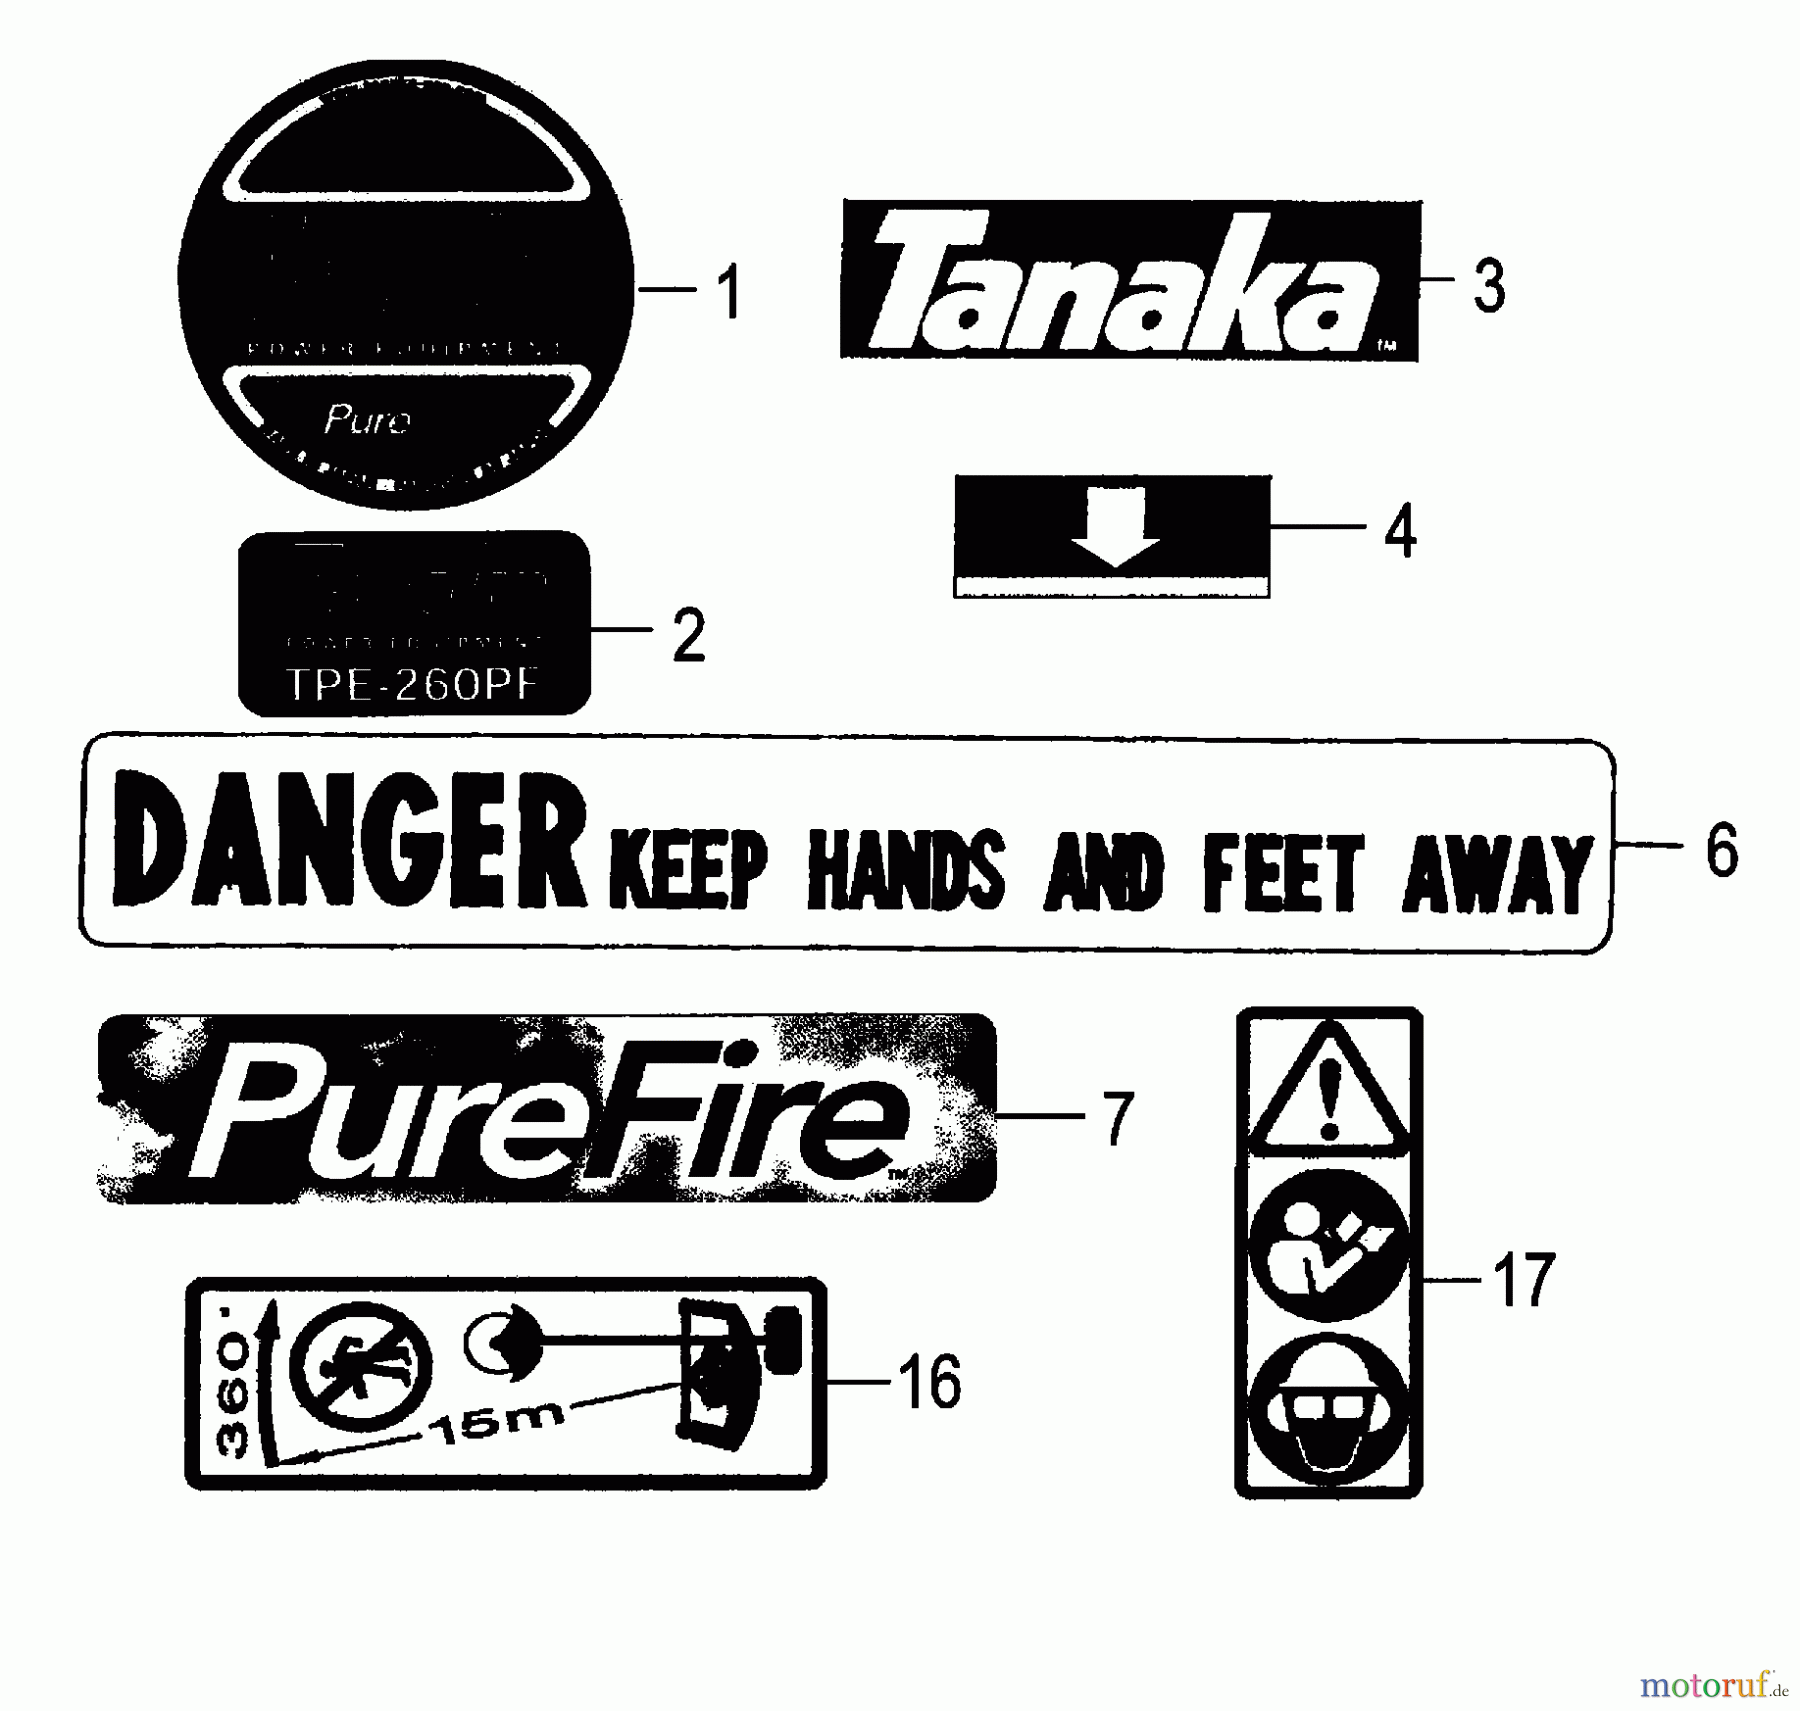  Tanaka Kantenschneider TPE-260PF - Tanaka Portable Edger Decals